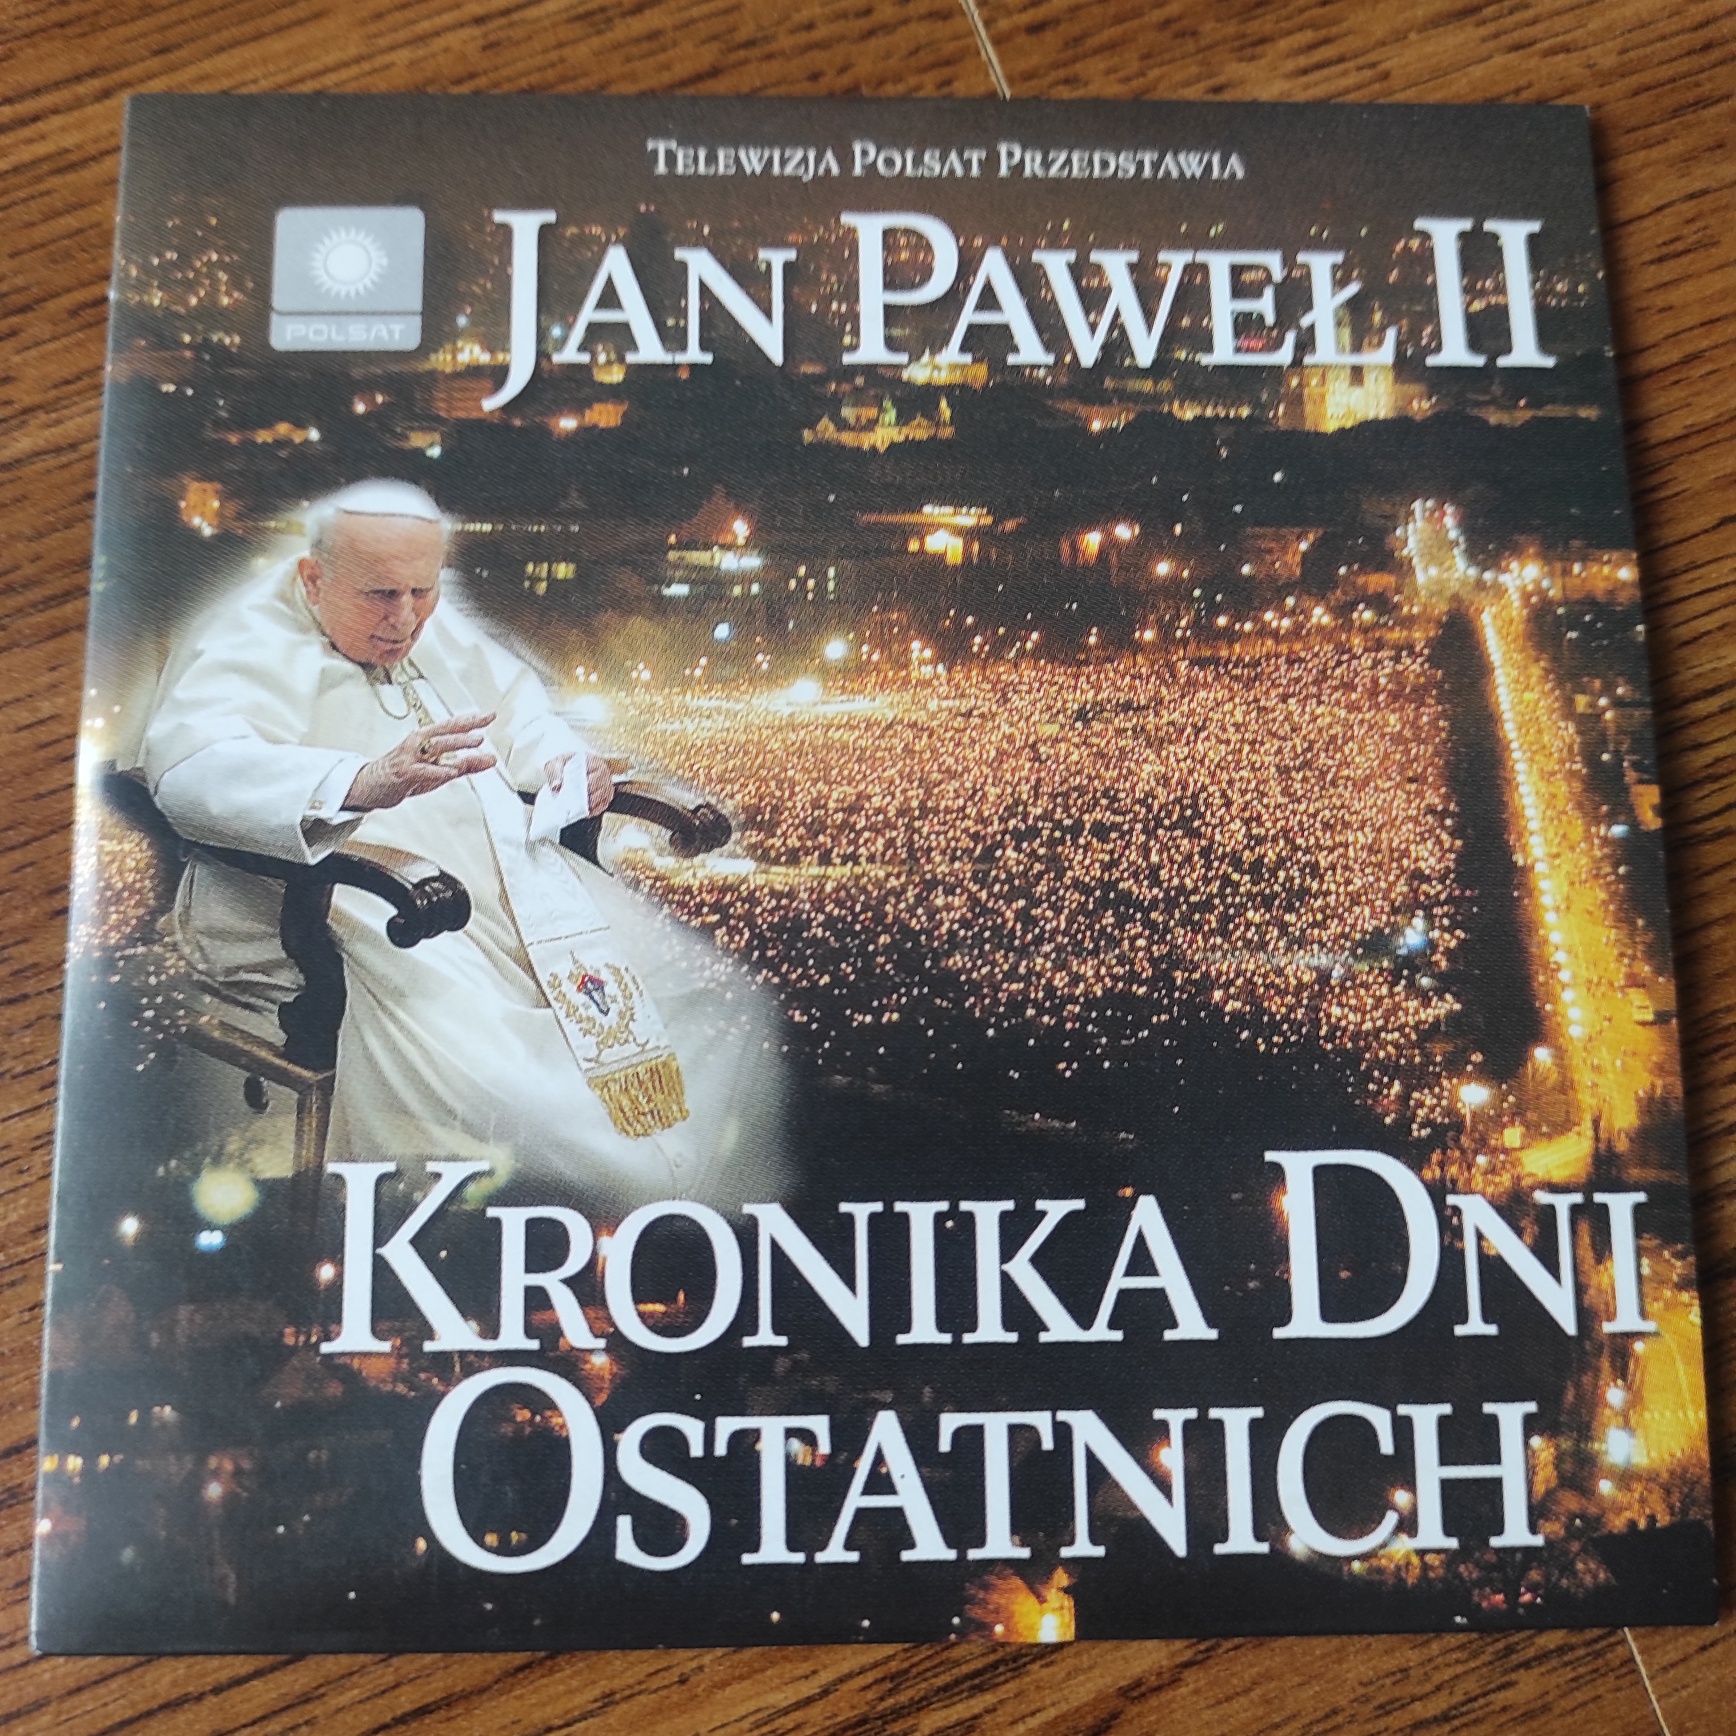 Płyta CD o Papieżu Janie Pawle II